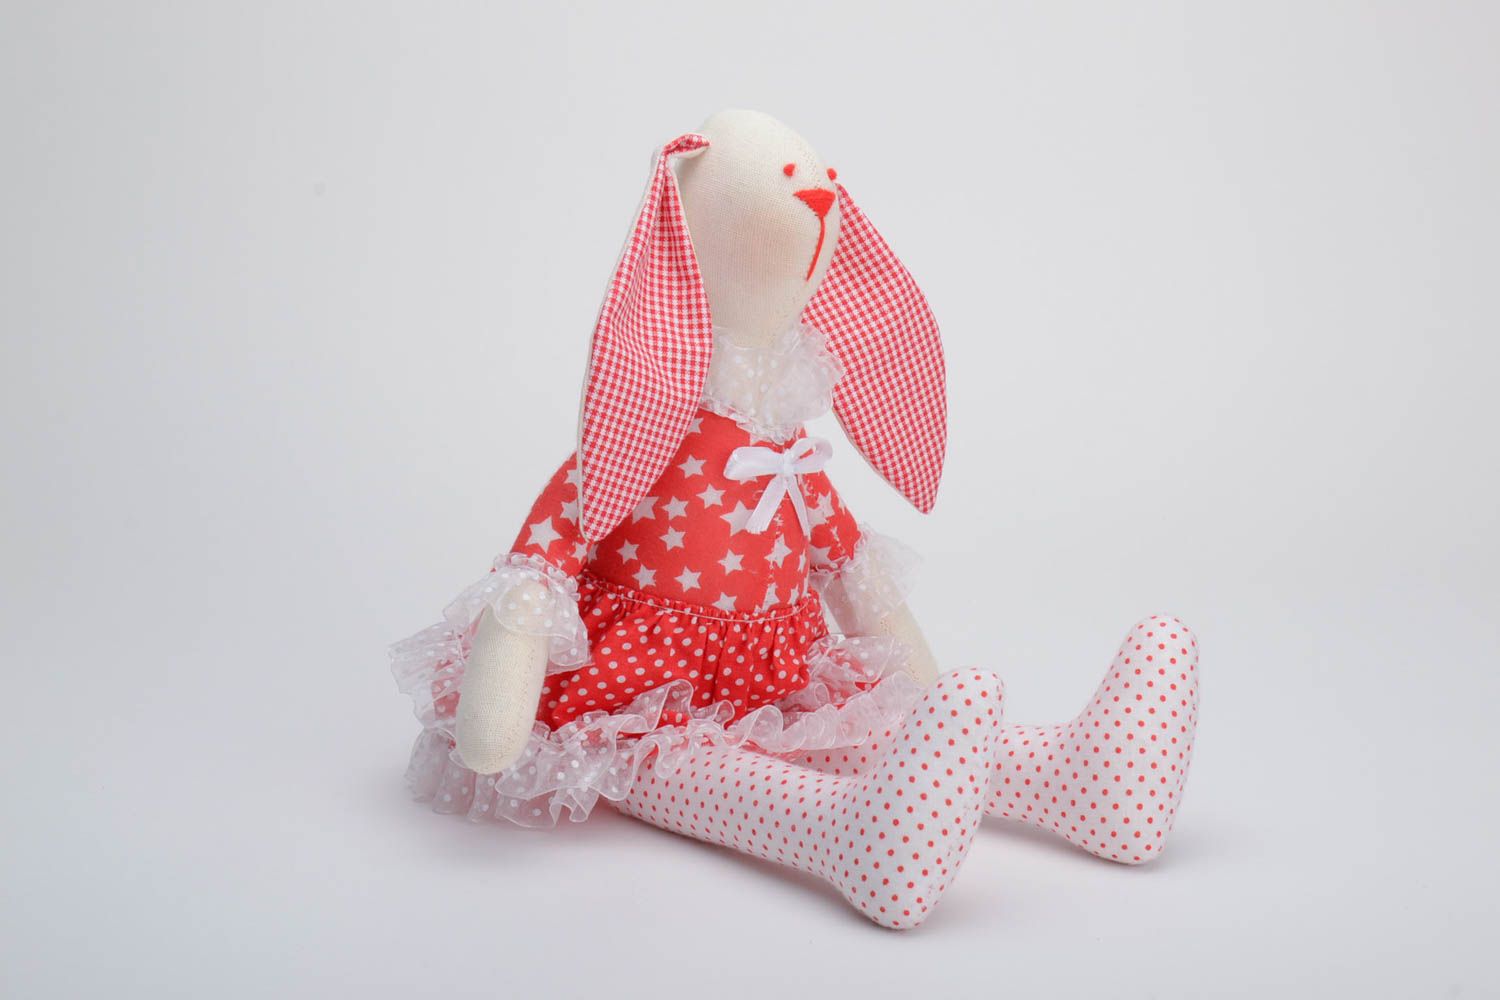 Текстильная игрушка заяц в платье из хлопка ручной работы красивая красная фото 2